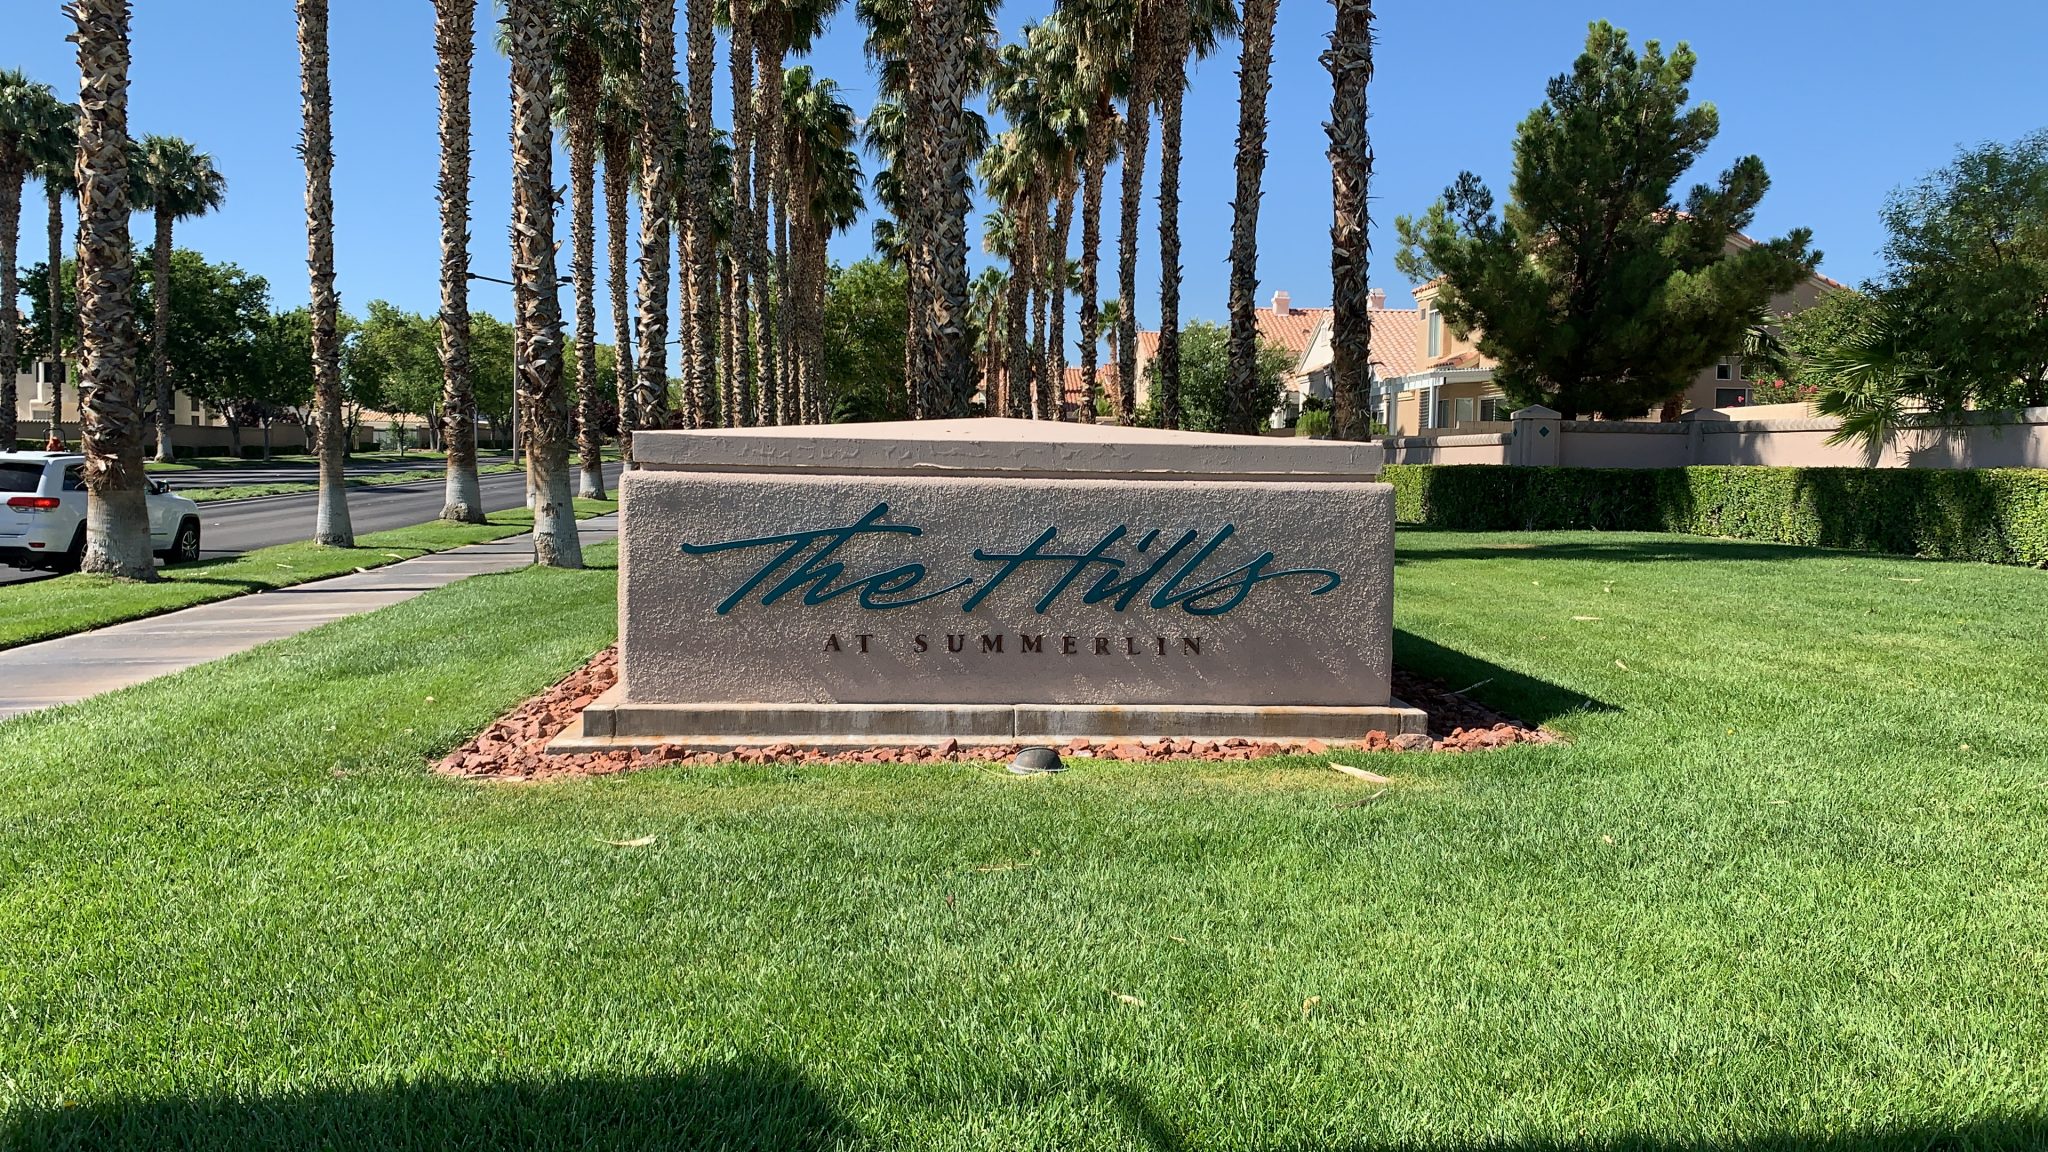 The Hills Village